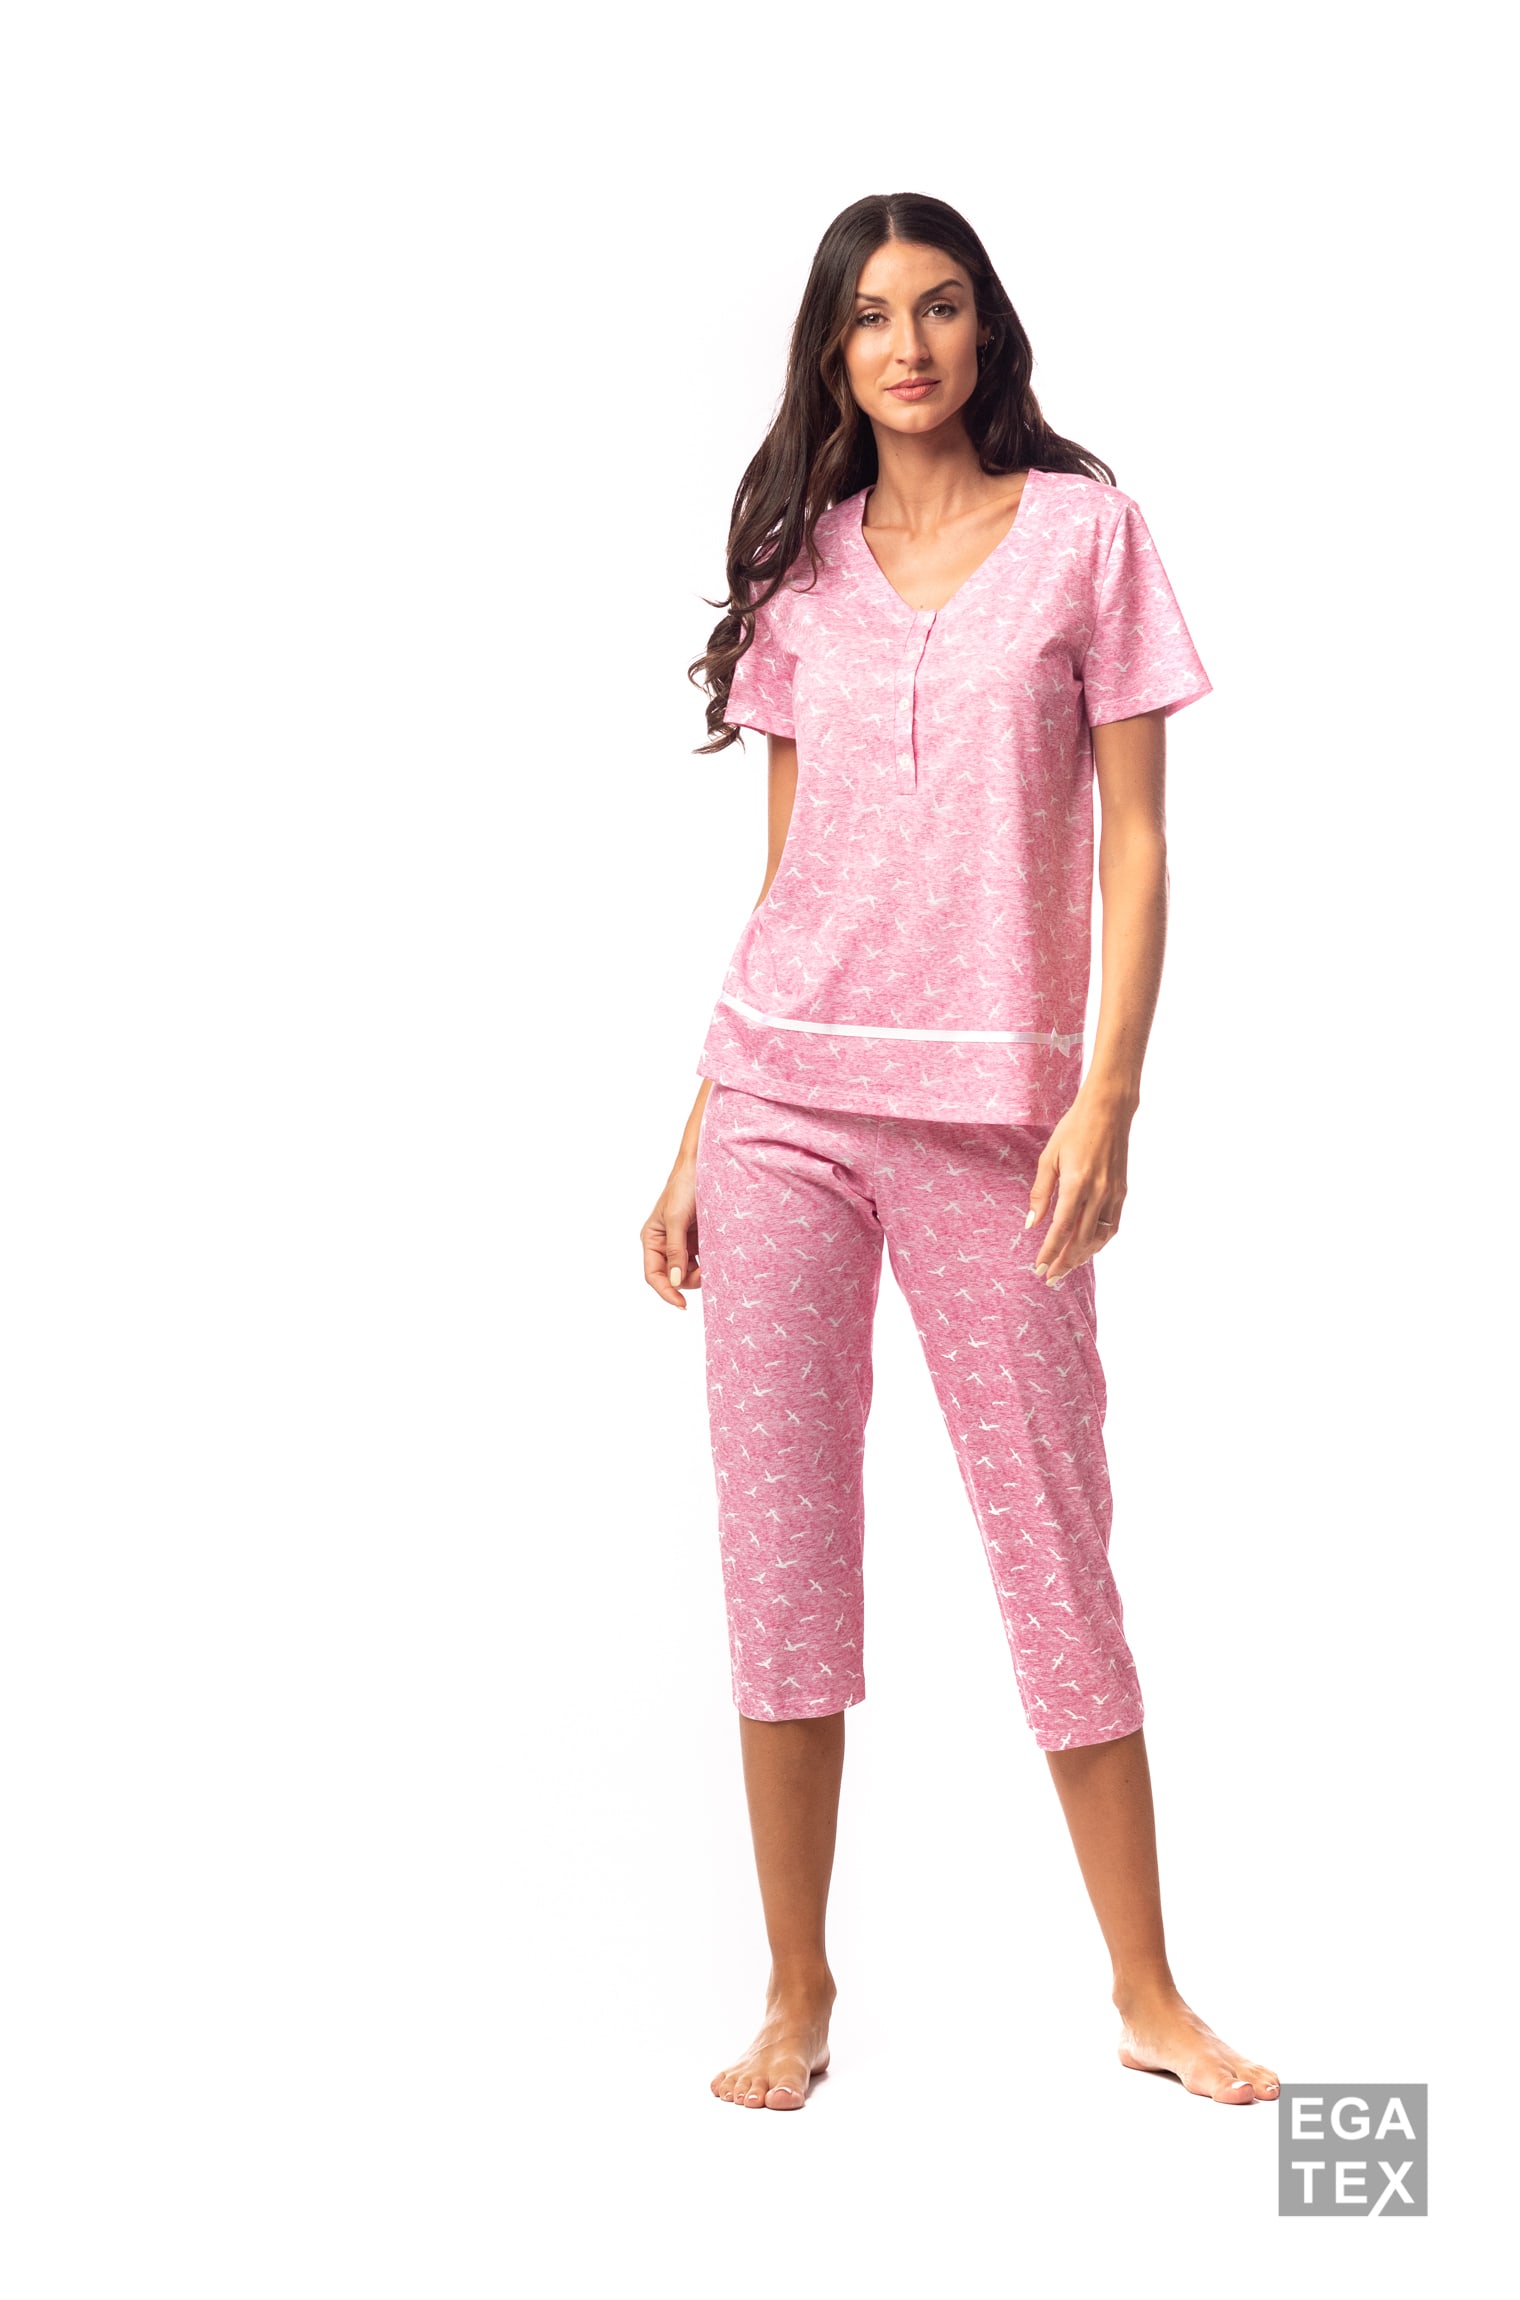 Egatex Pijama 221435 | Señorella